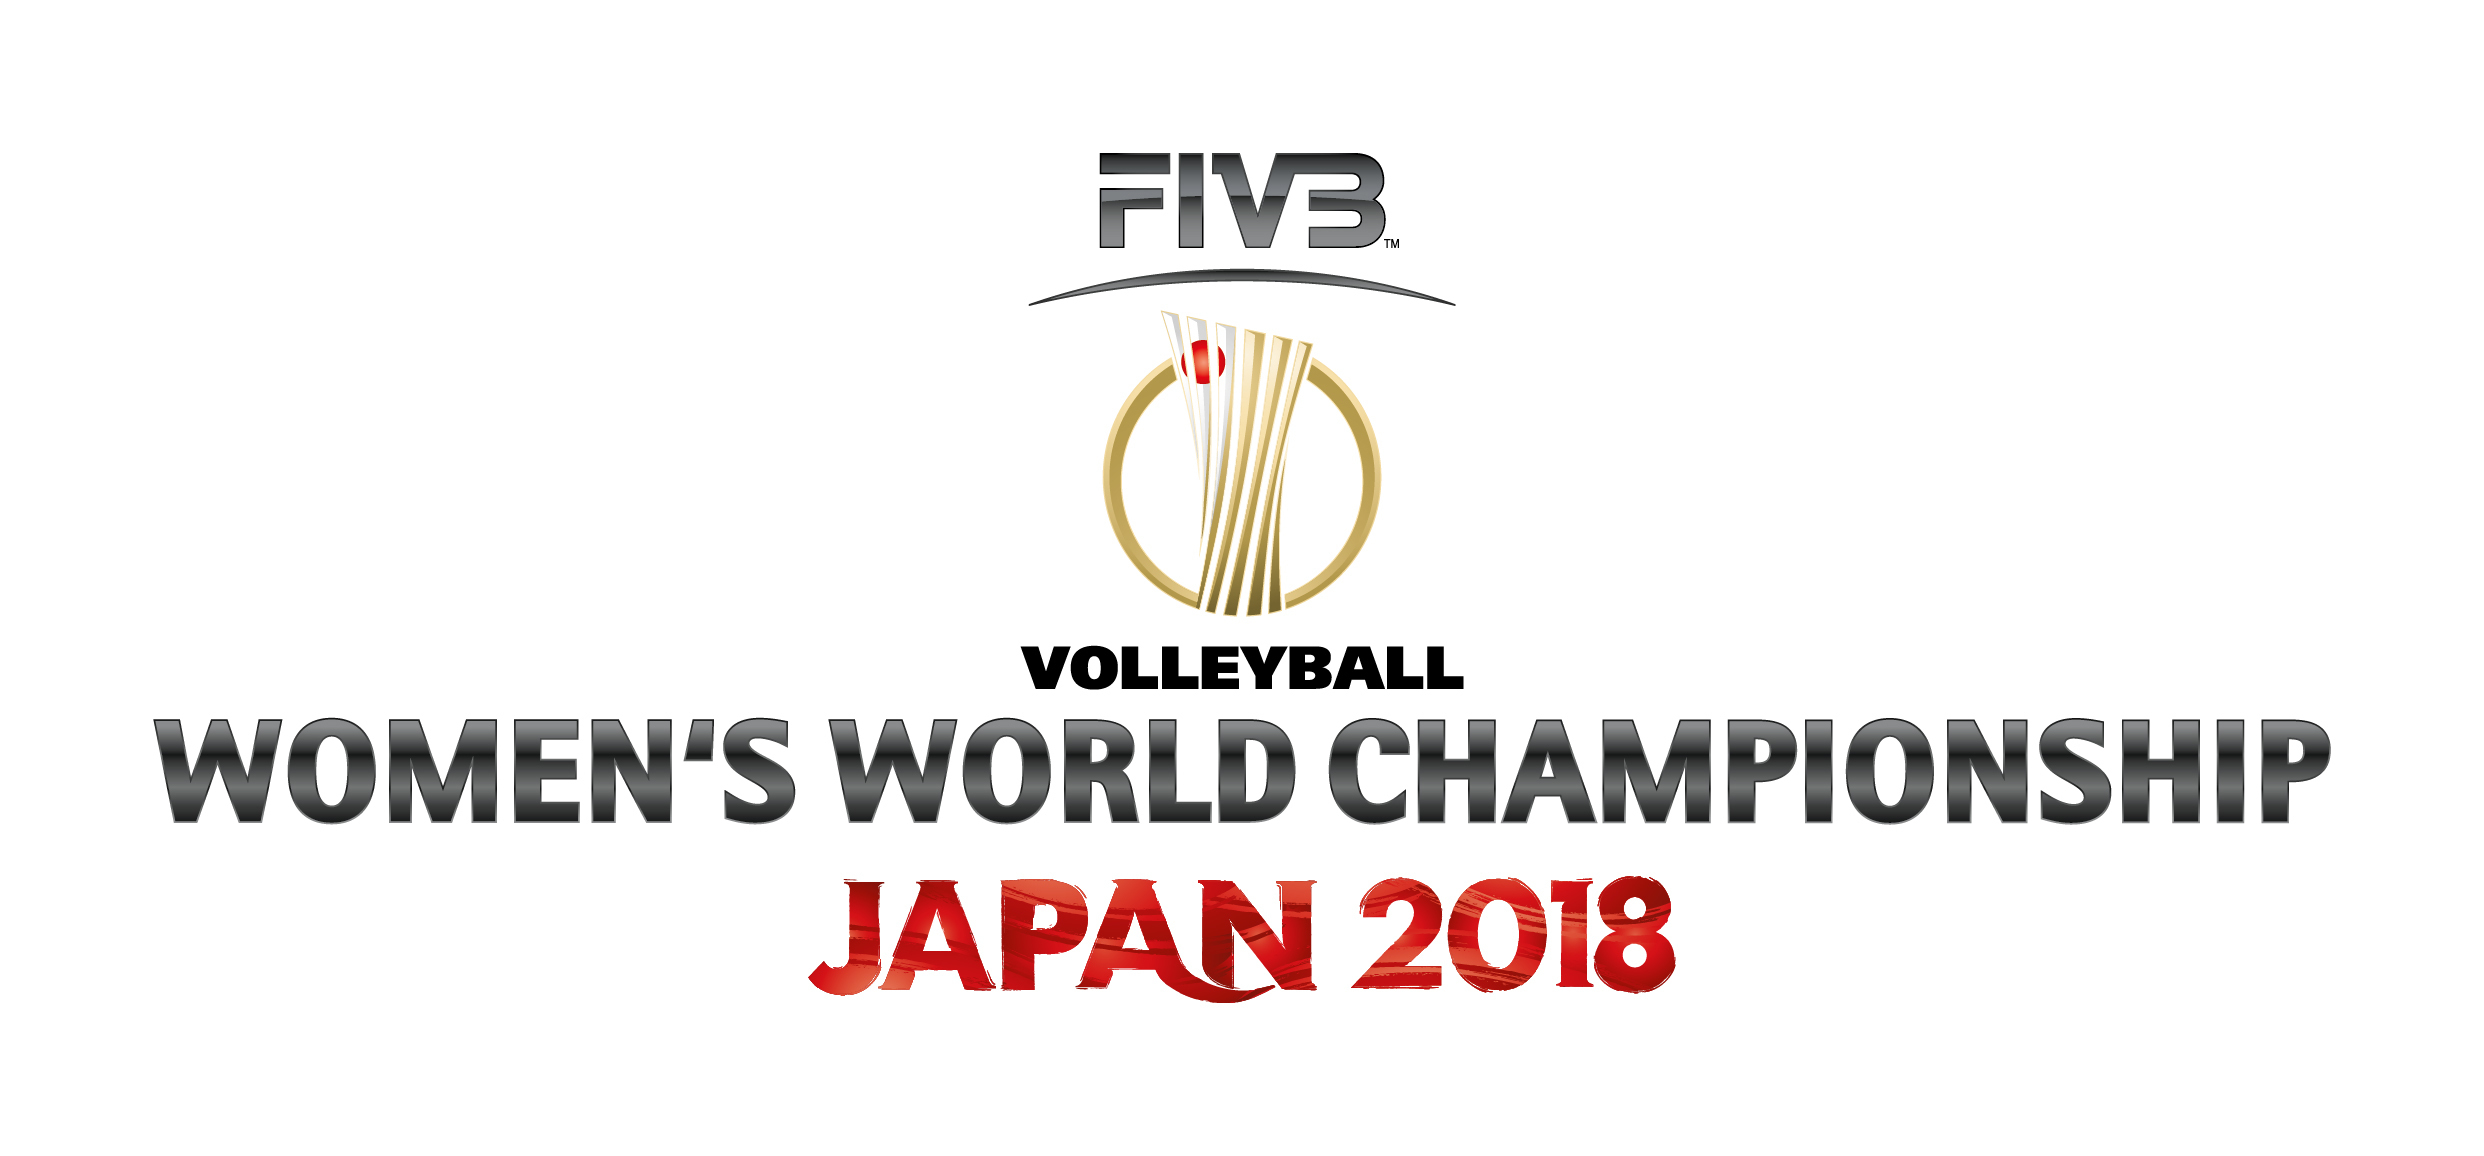 日本は次戦で『リオオリンピック2016』銀メダルのセルビアと対戦する